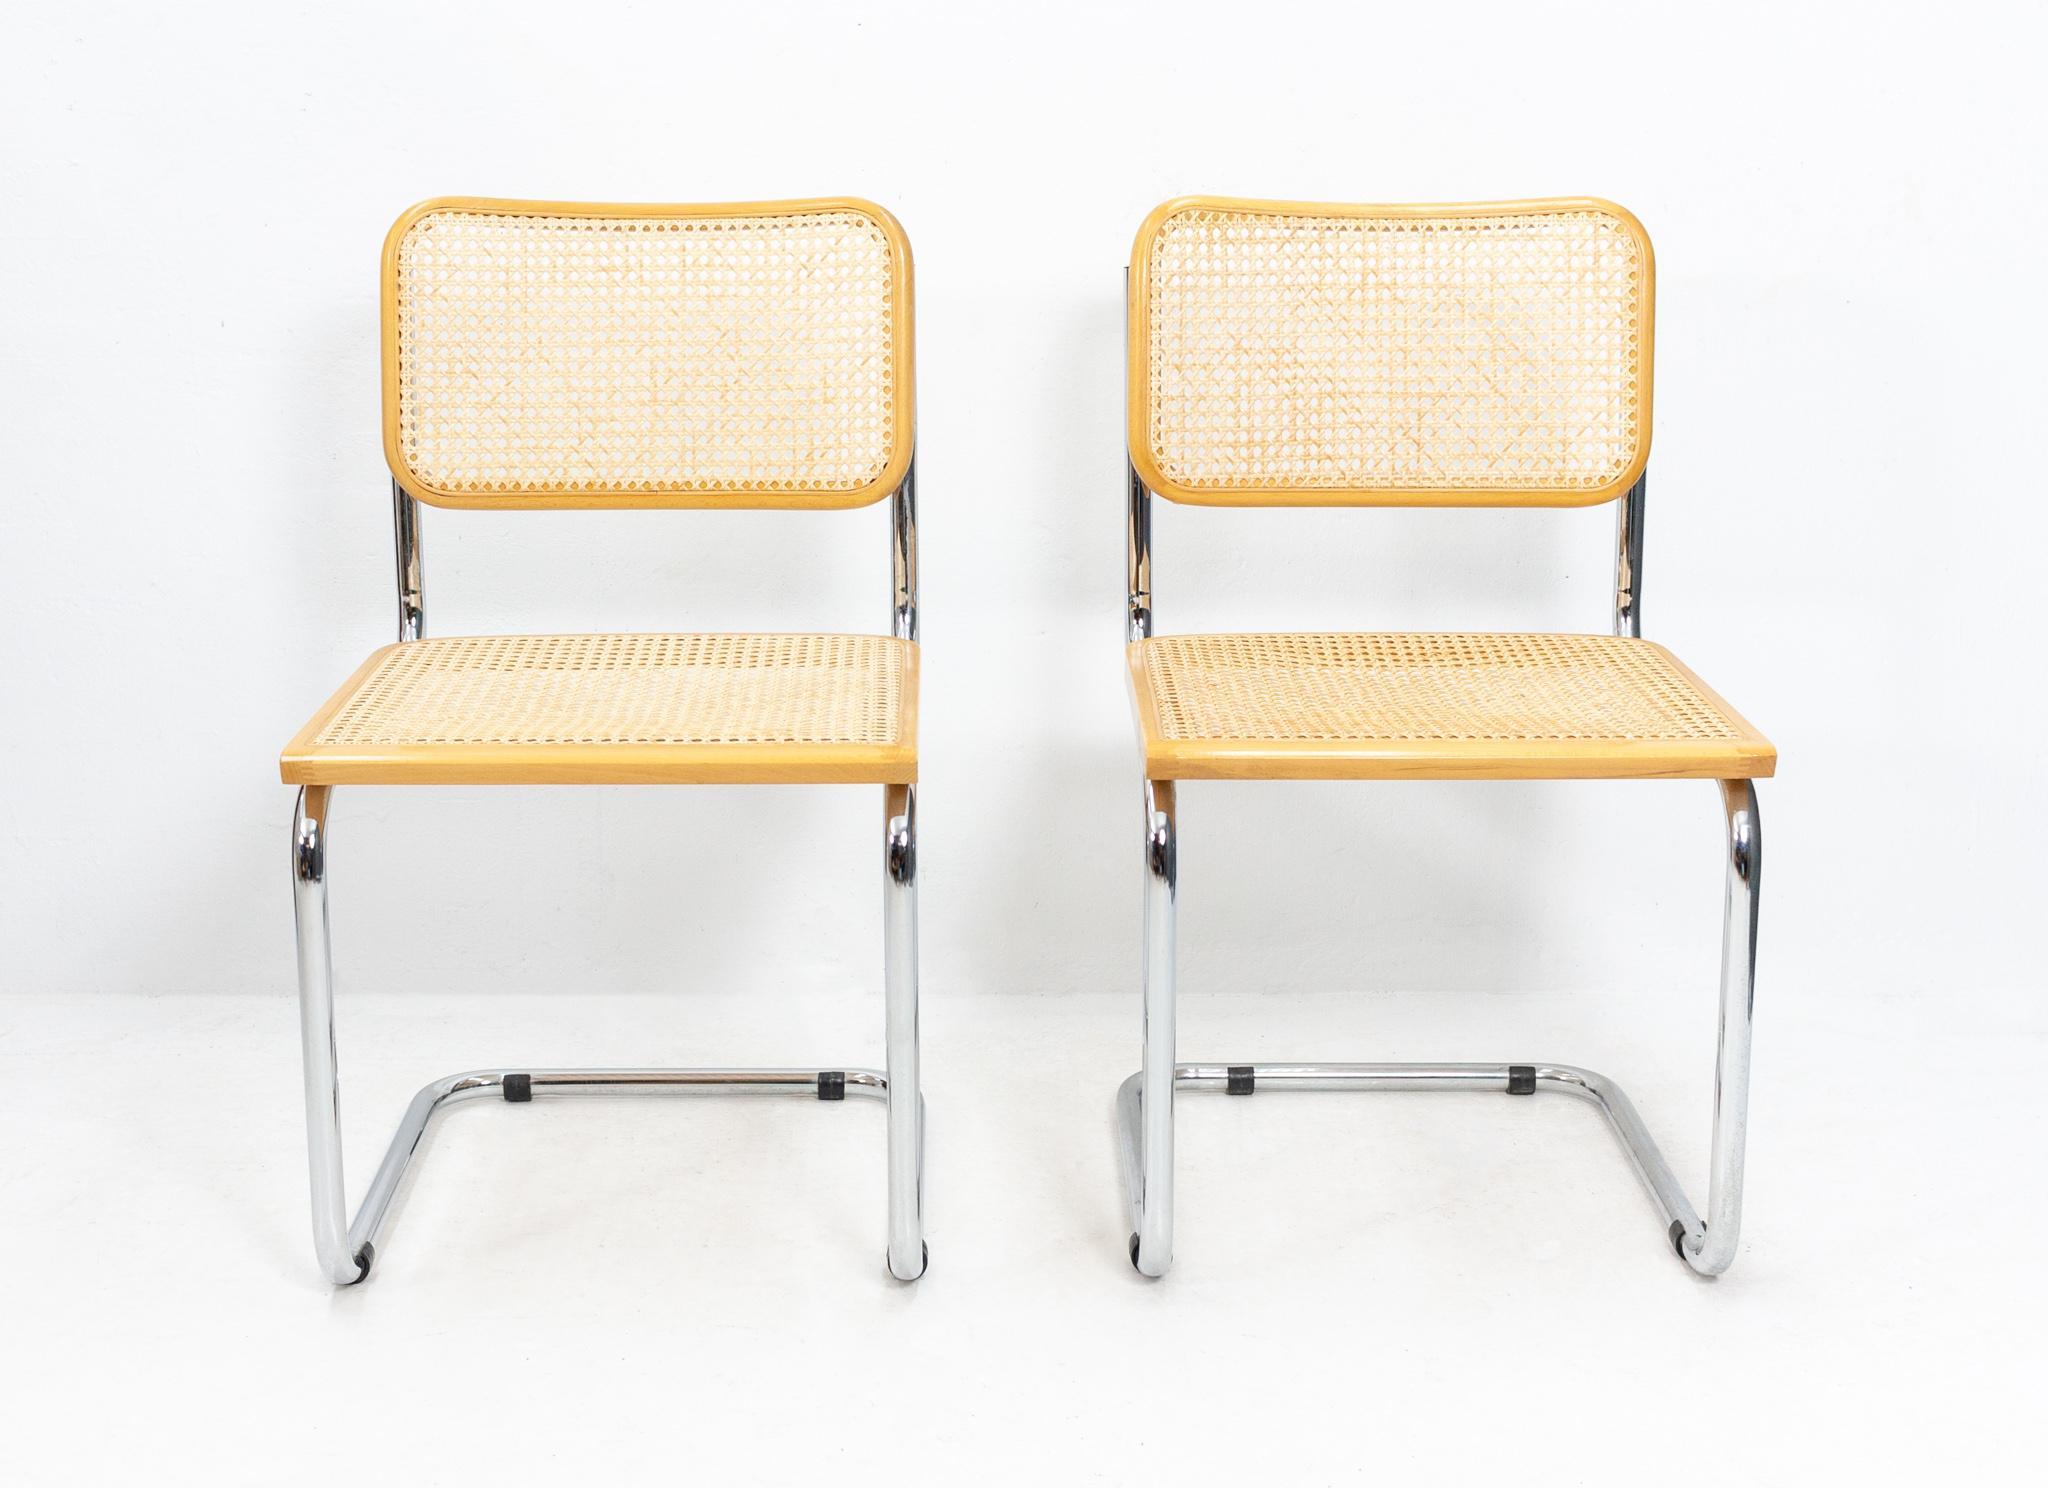 Bel ensemble de 2 chaises de table de salle à manger avec structure chromée:: assise et dossier en rotin tressé et bords en hêtre naturel. La chaise Cesca S32 a été conçue en 1928 par Marcel Breuer et produite par Thonet. Cette version a été